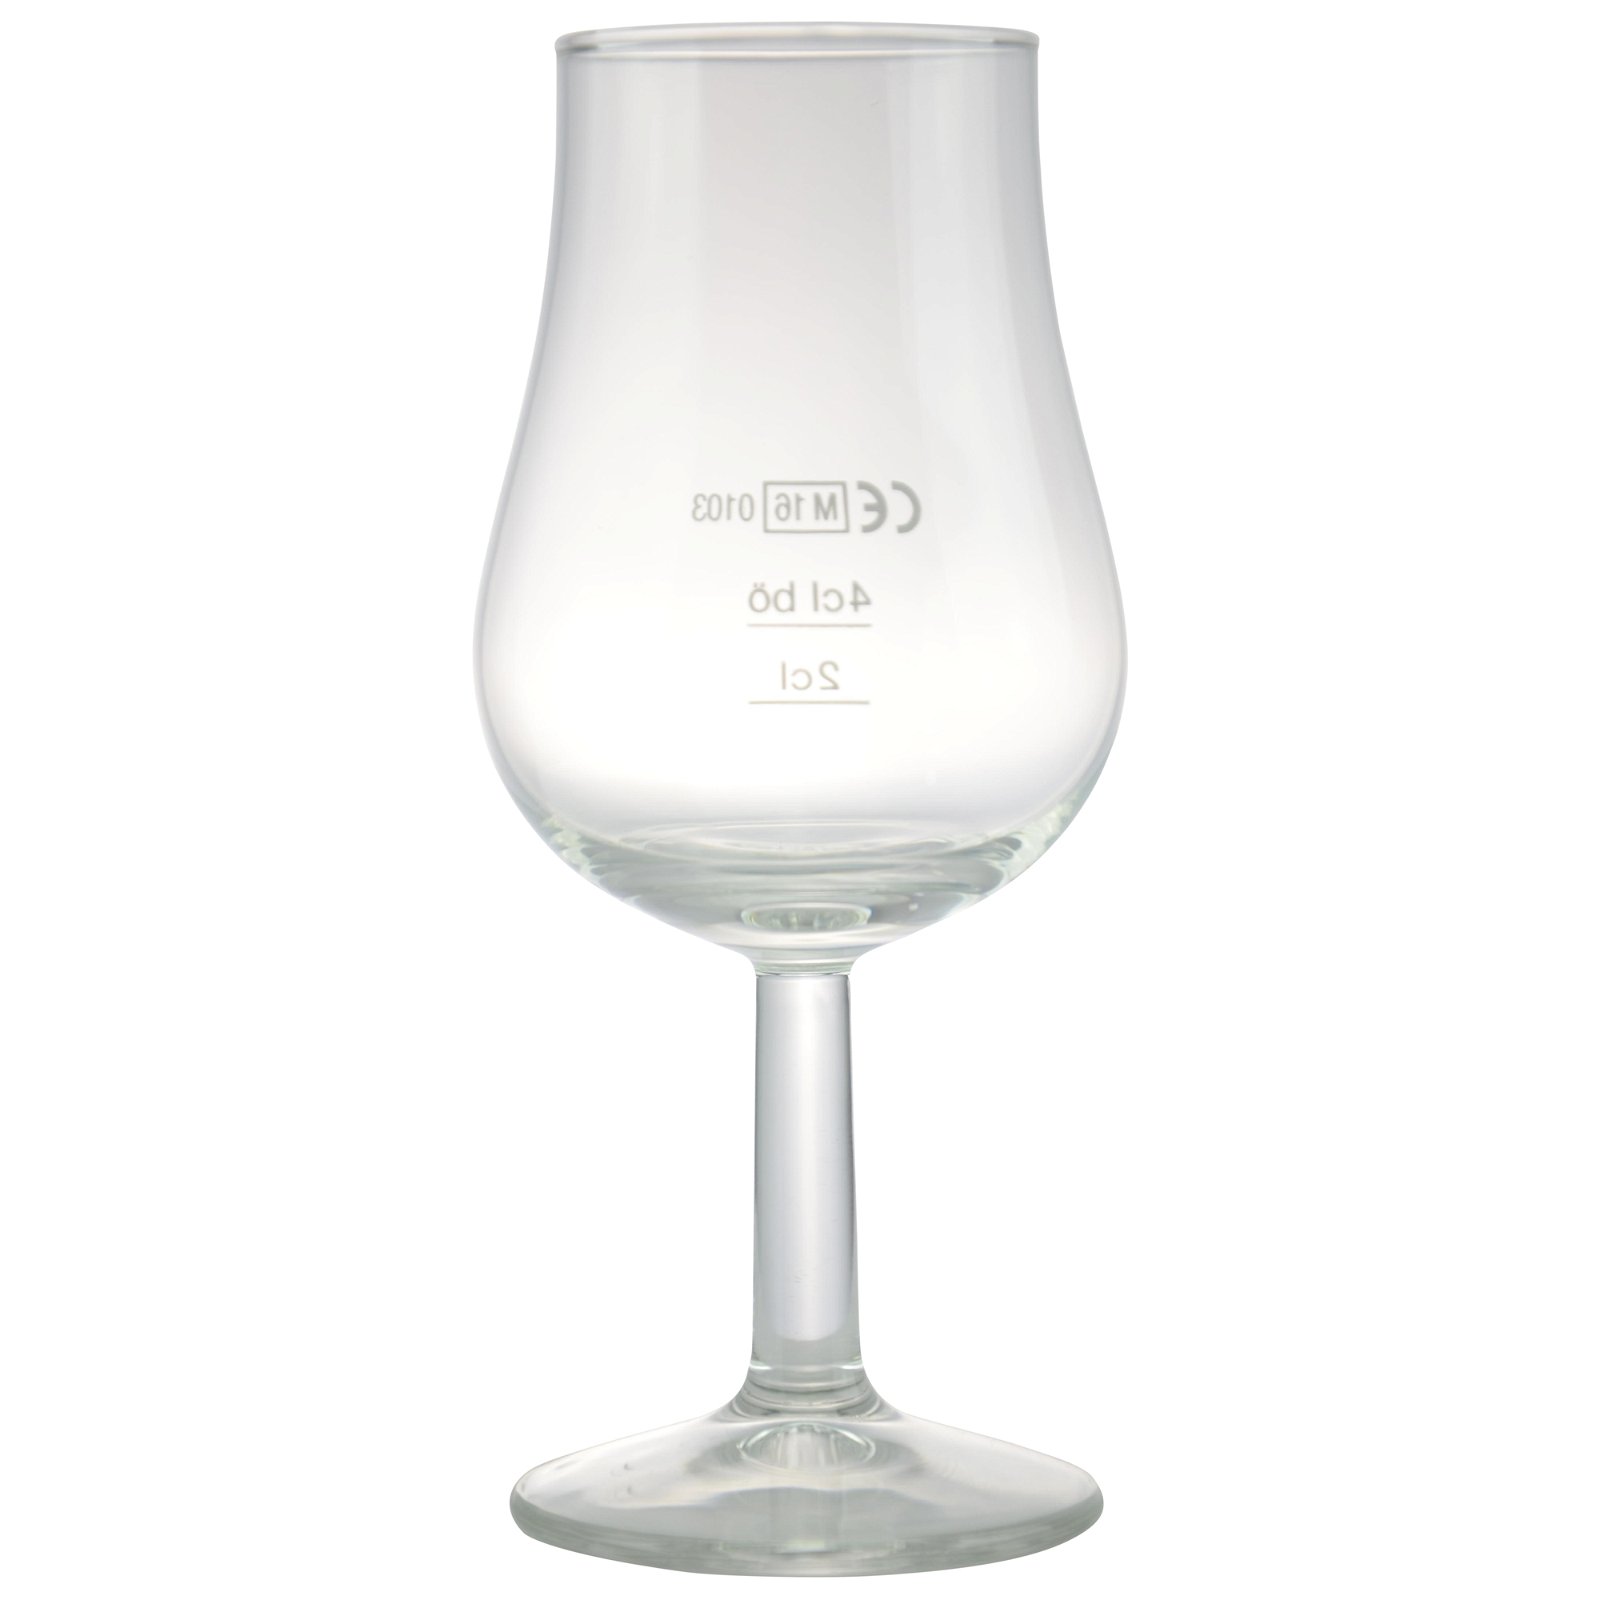 Whisky Nosingglas (neutral, mit Eichstrich)